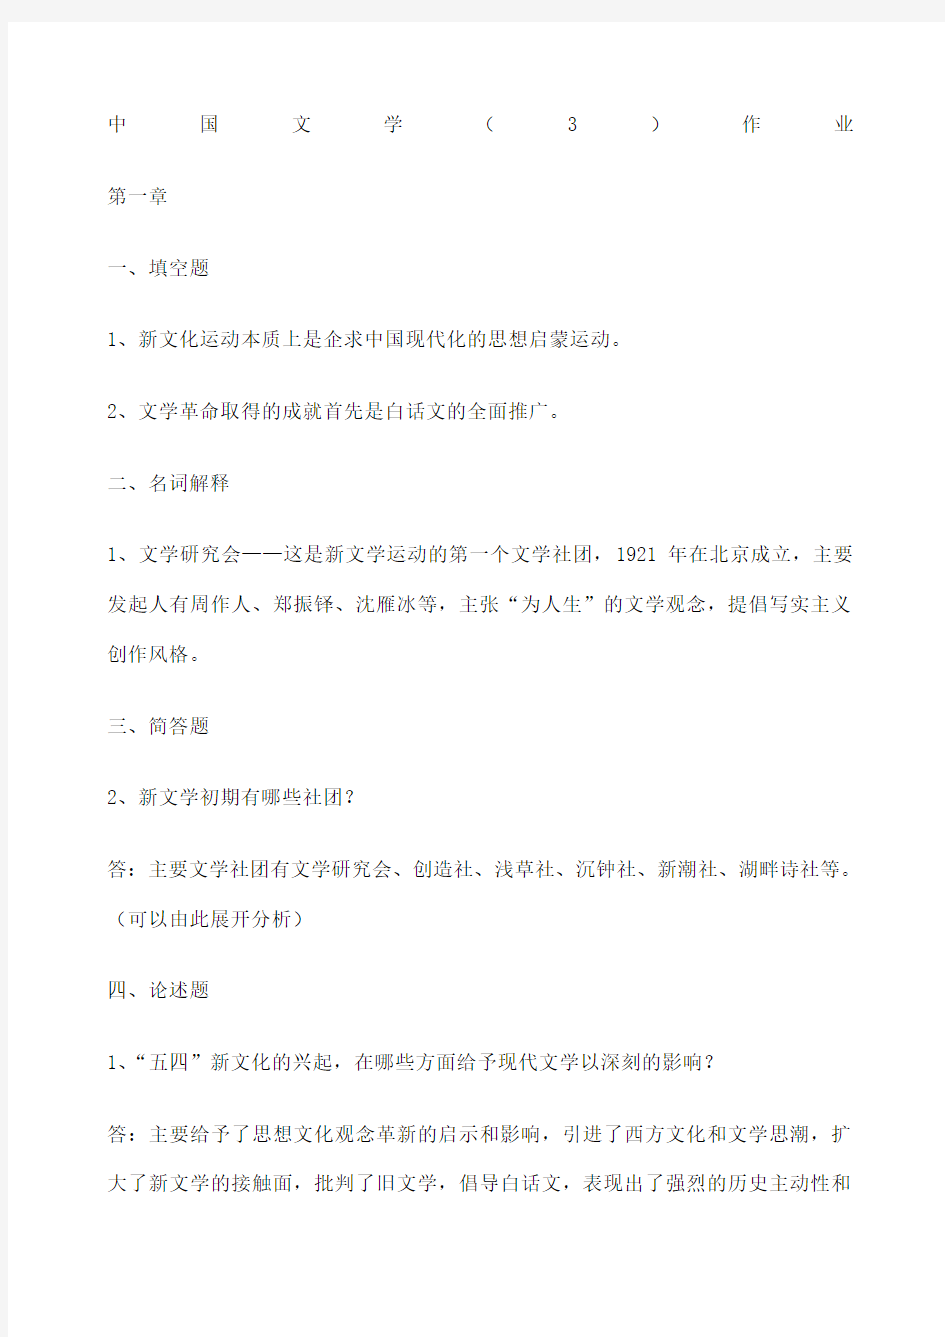 中国文学 选做作业答案